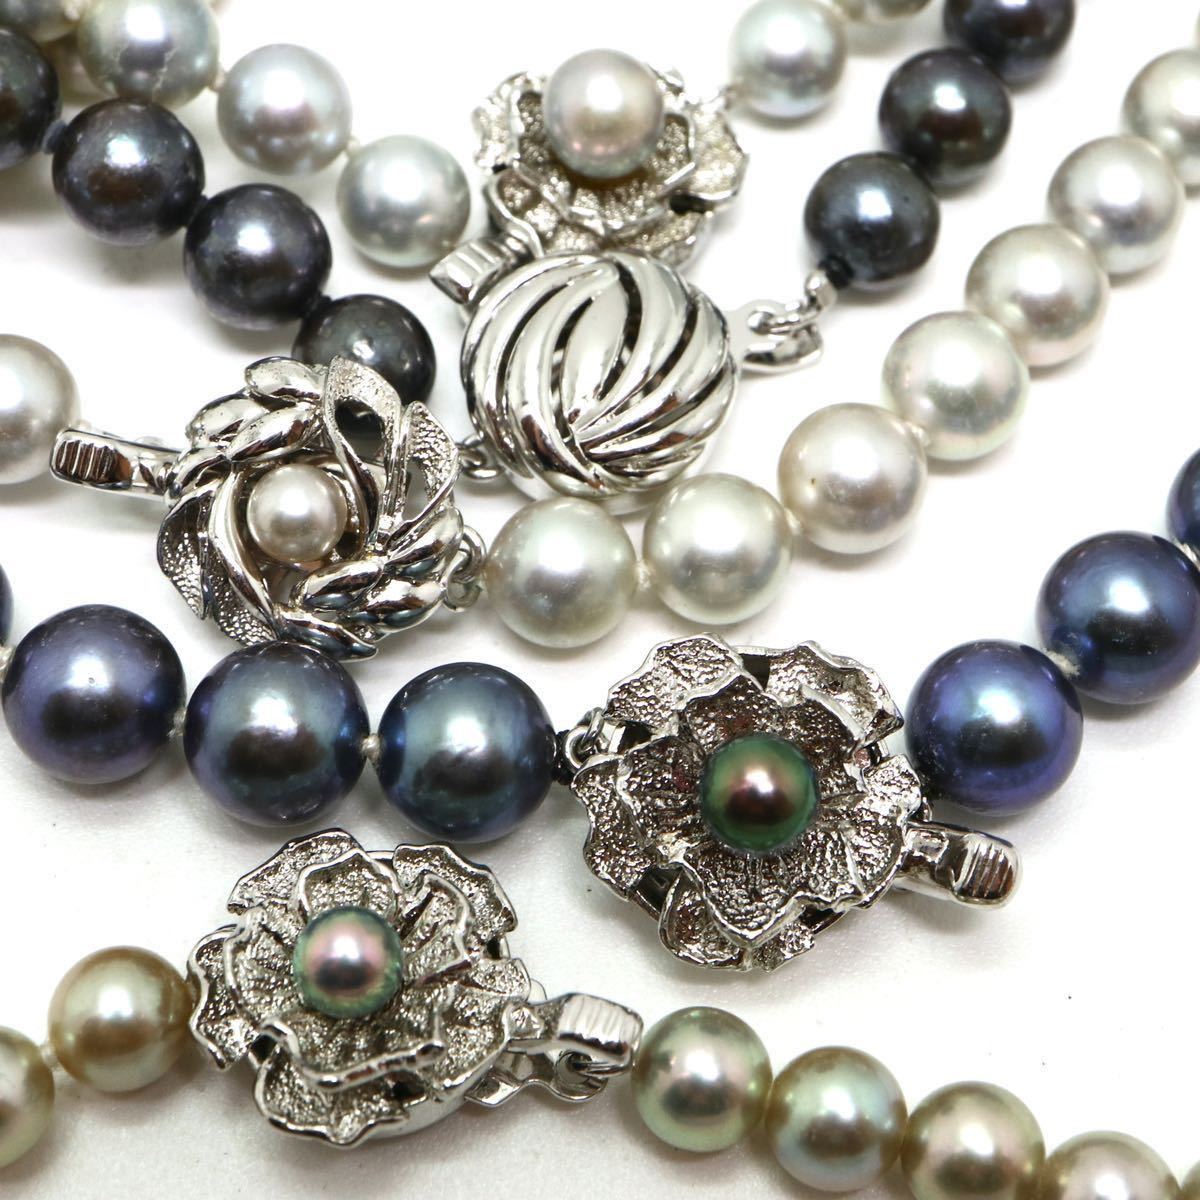 テリ良し!!《アコヤ本真珠5本ネックレスまとめ》F 約6.0-8.5mm珠 約192.7g pearl necklace jewelry EB0_画像4